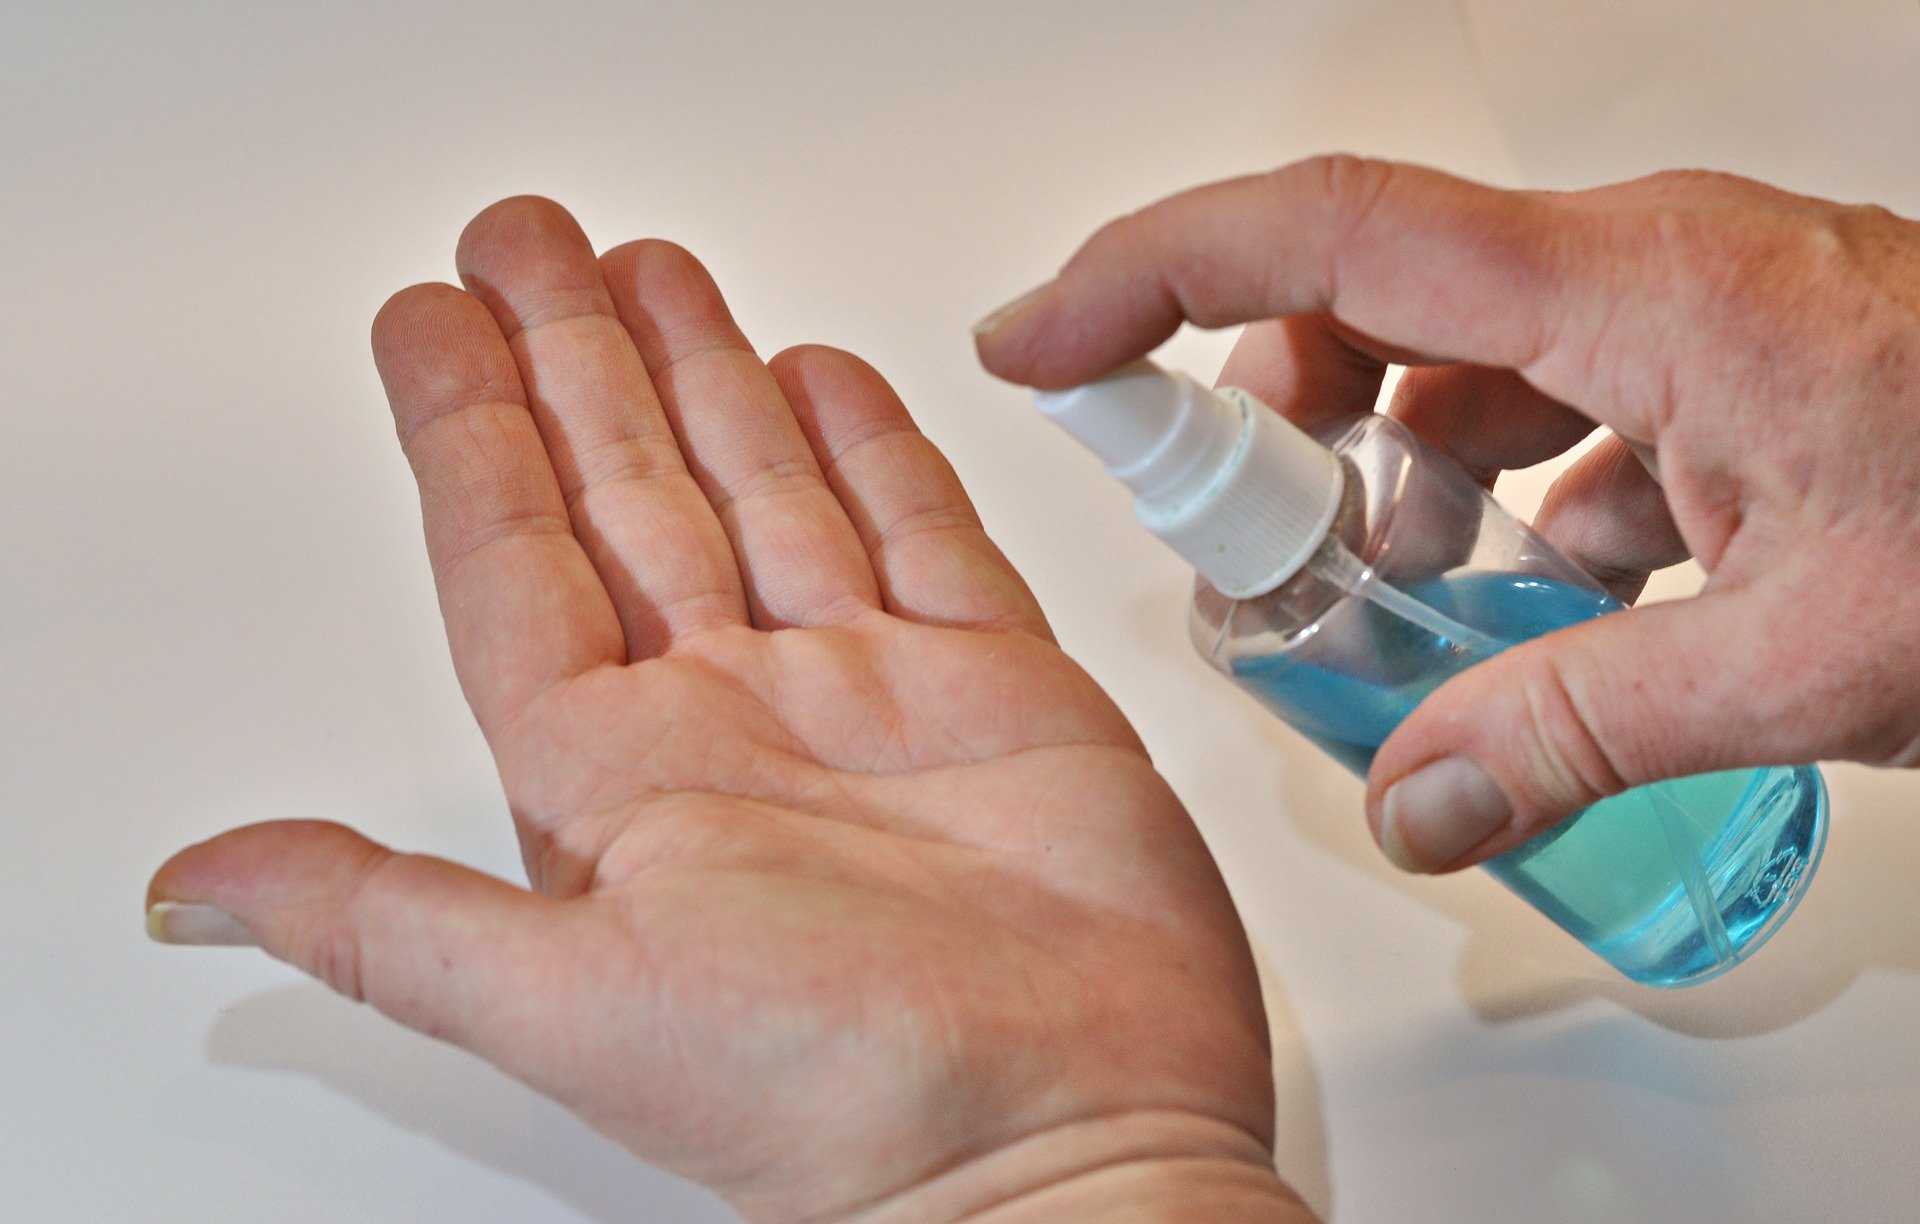 Wiceprezes NRPiP: Do dezynfekcji rąk należy stosować preparaty biobójcze